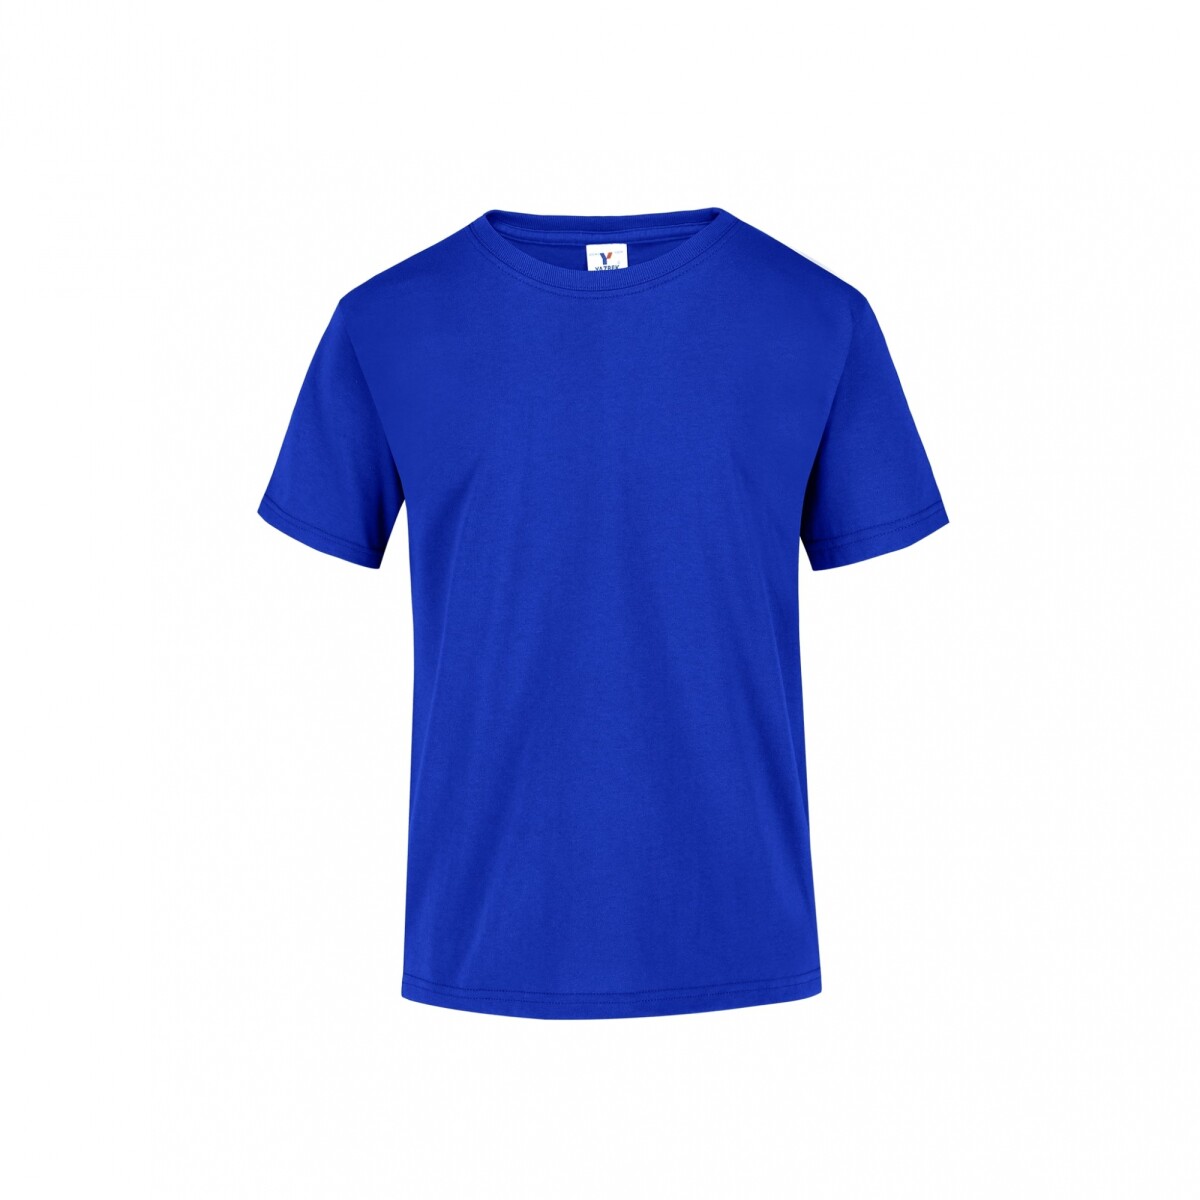 Camiseta a la base niño - Azul royal 